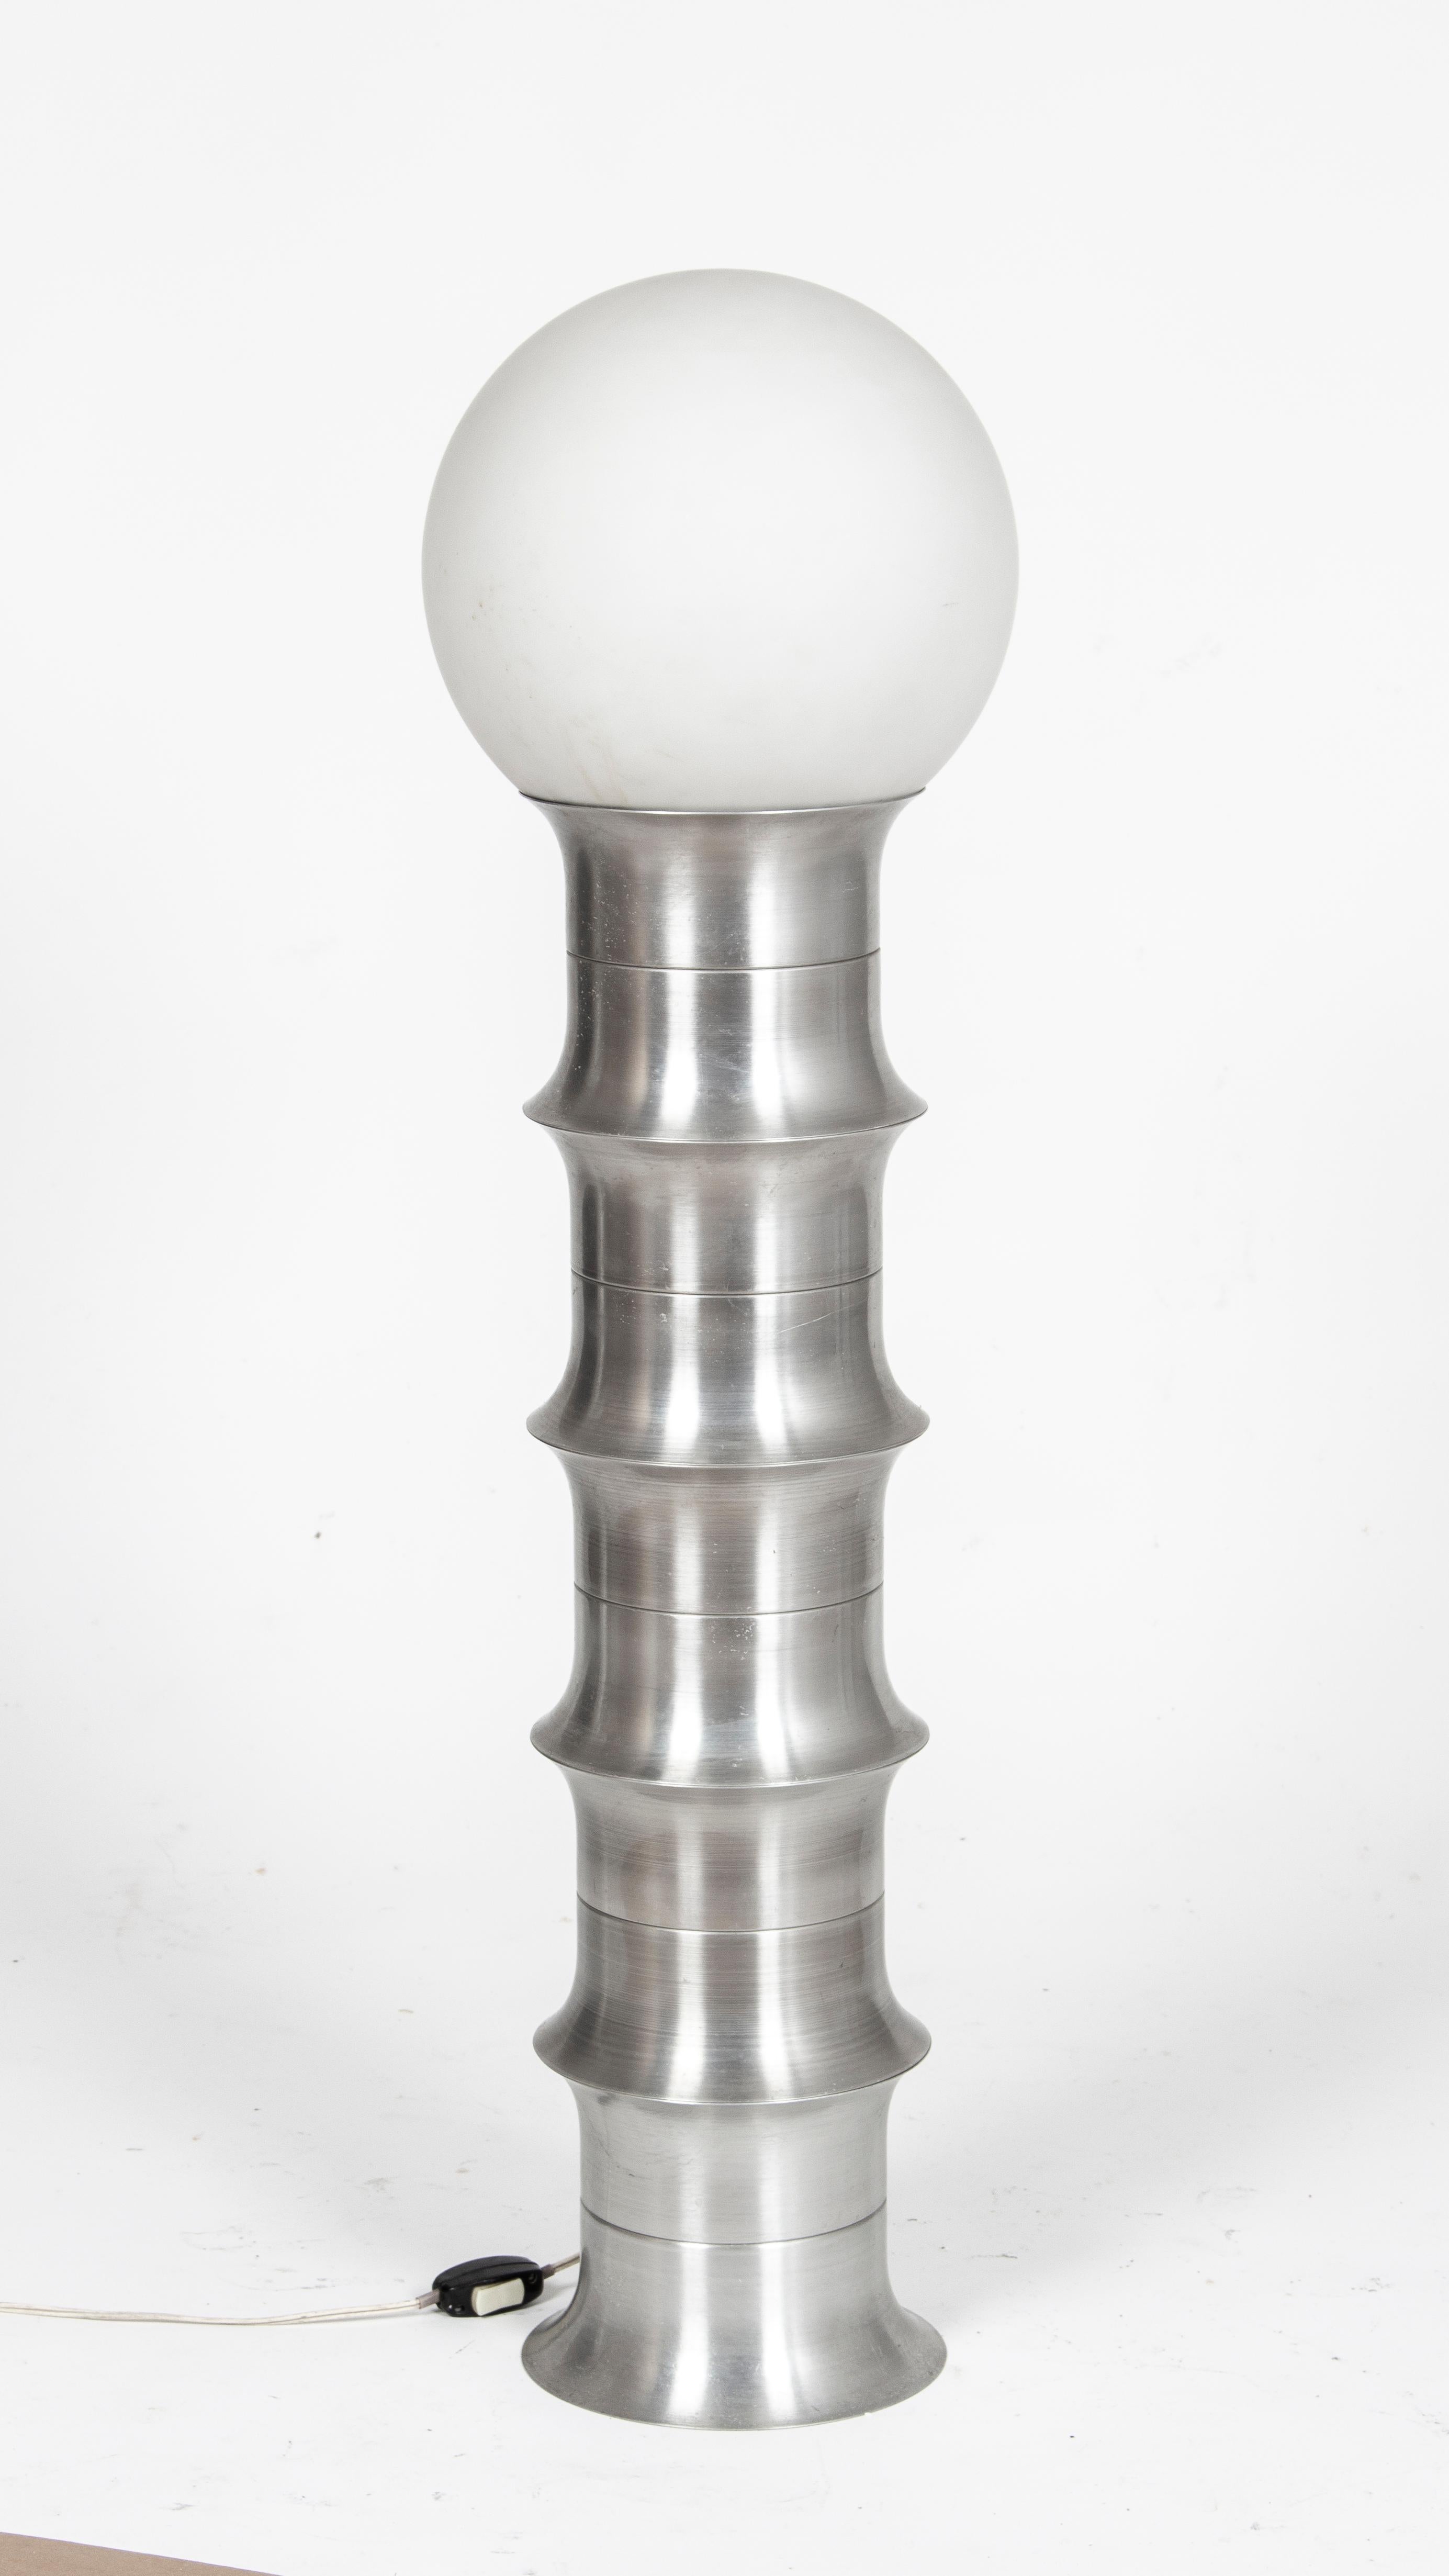 Aluminum Rare Industrial Design Column Floor Lamp from 1965